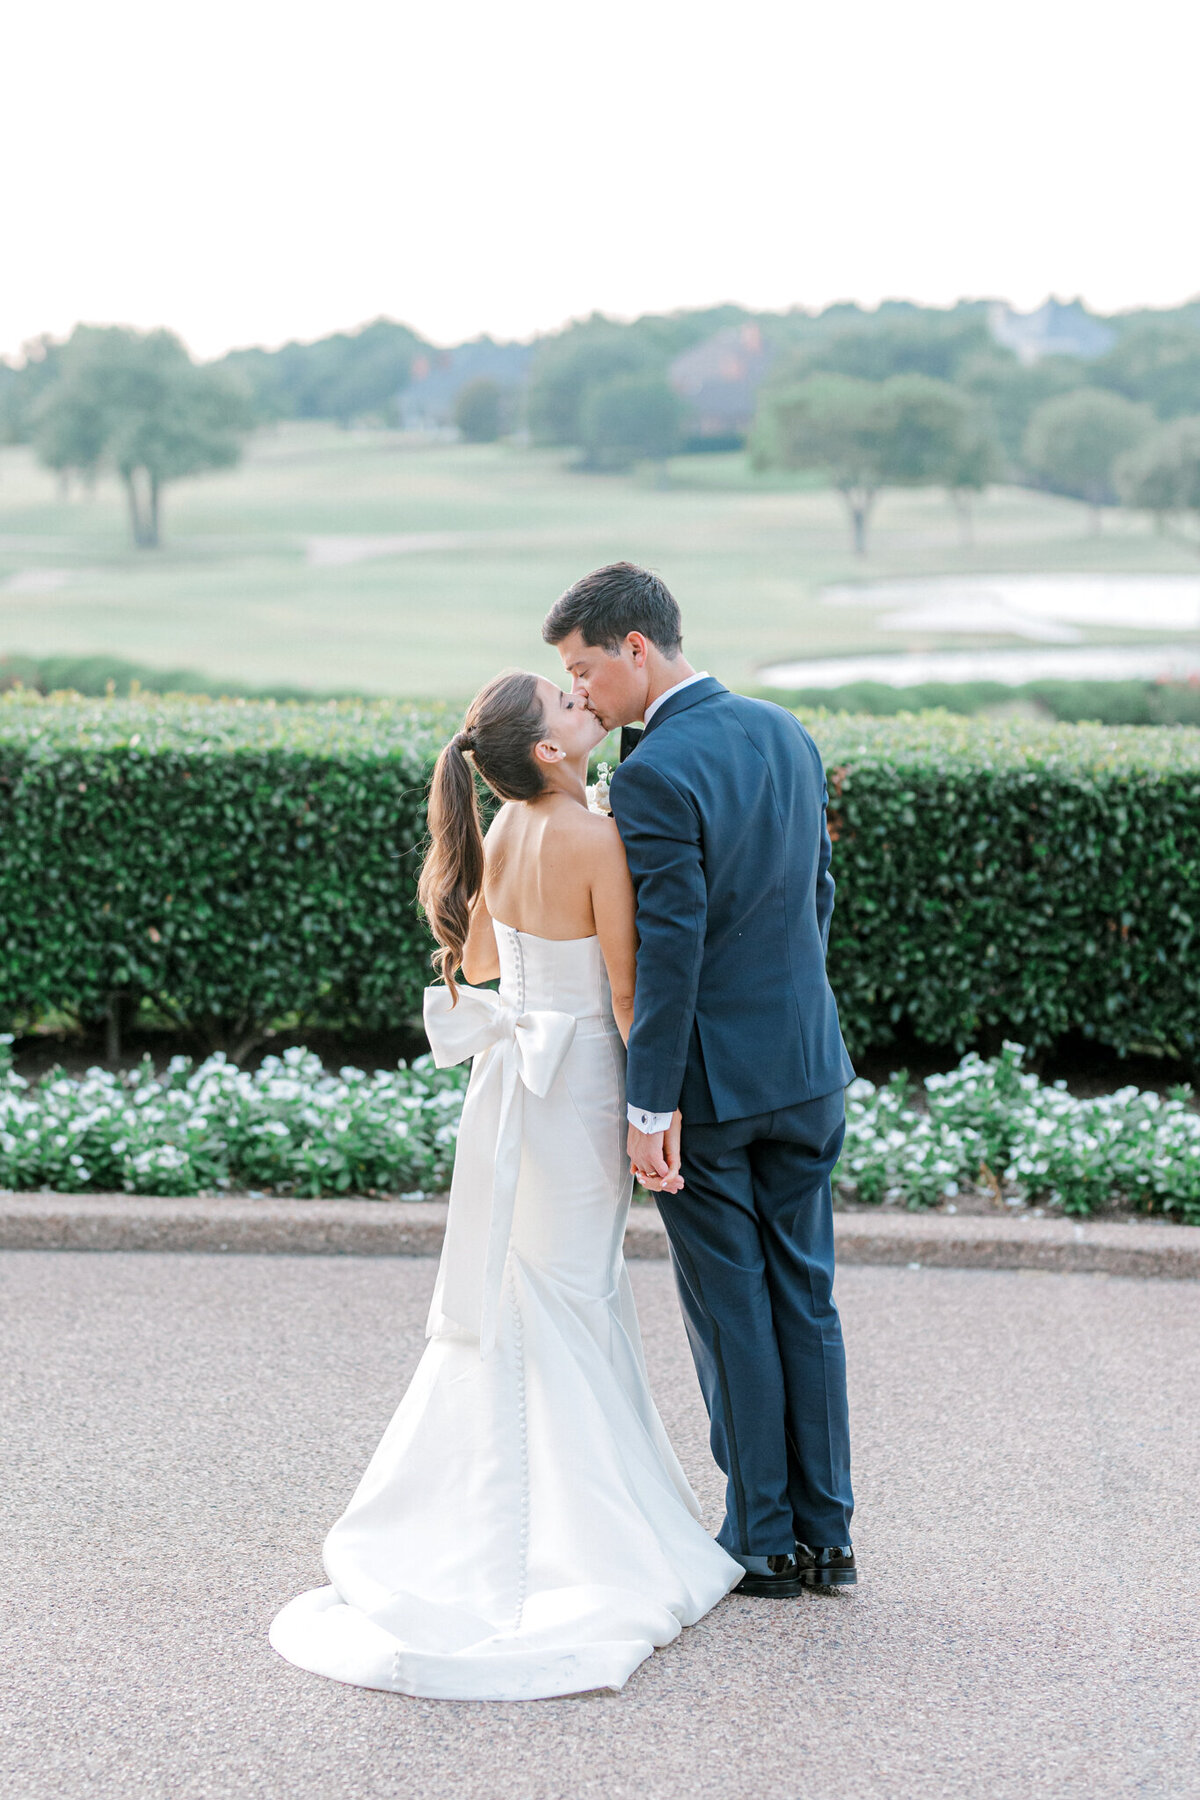 Annie & Logan's Wedding | Dallas Wedding Photographer | Sami Kathryn Photography-223